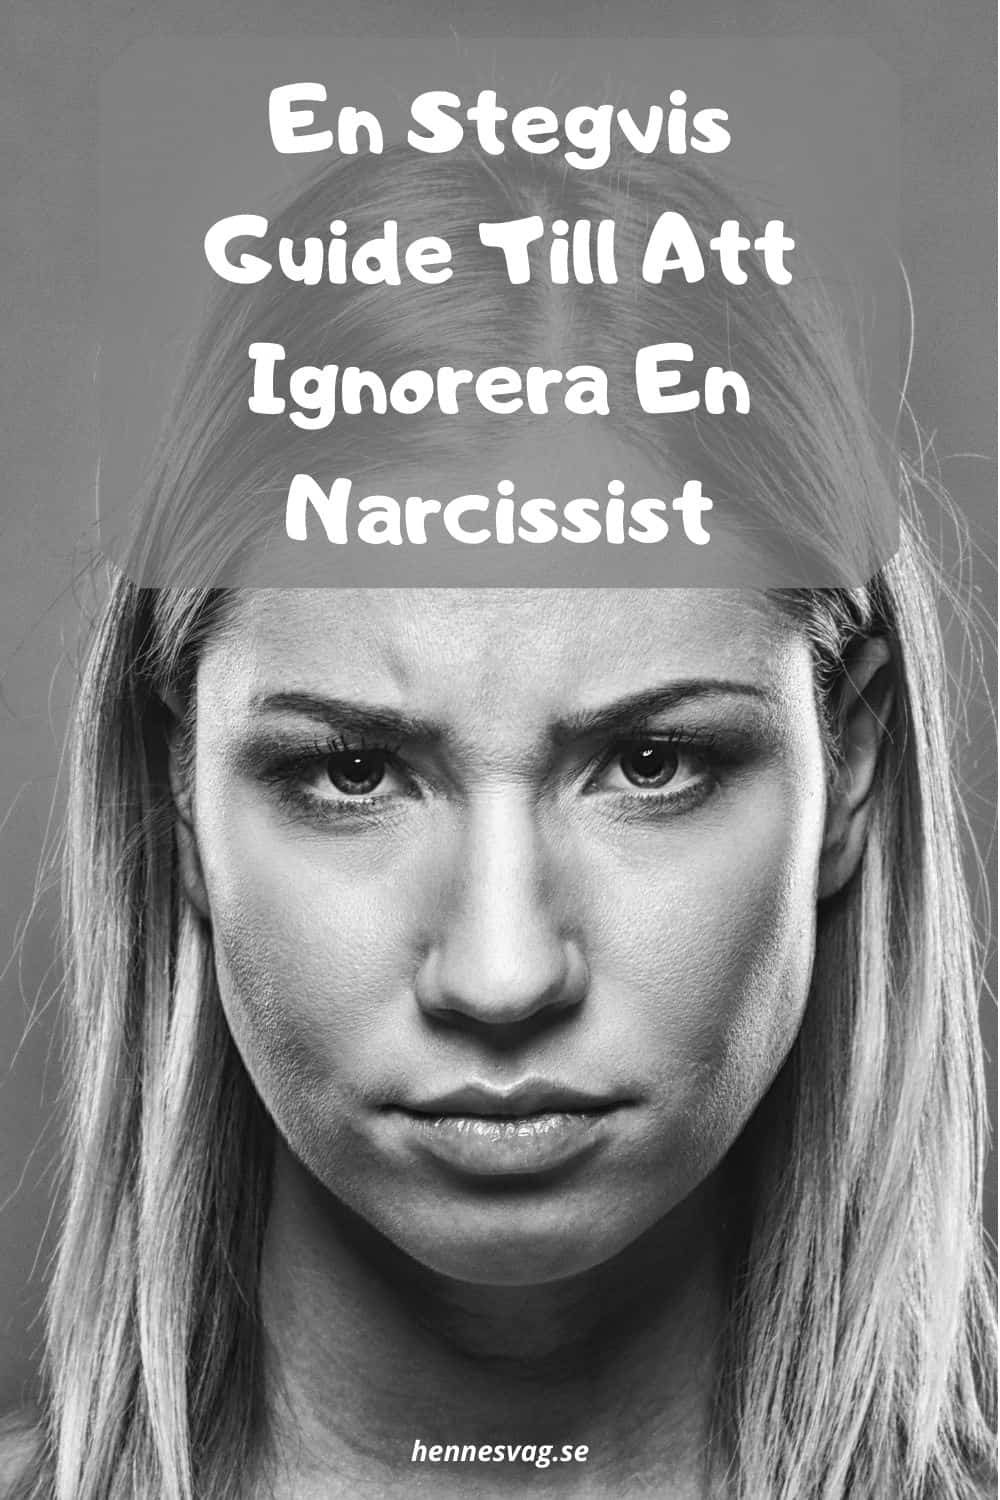 En Stegvis Guide Till Att Ignorera En Narcissist